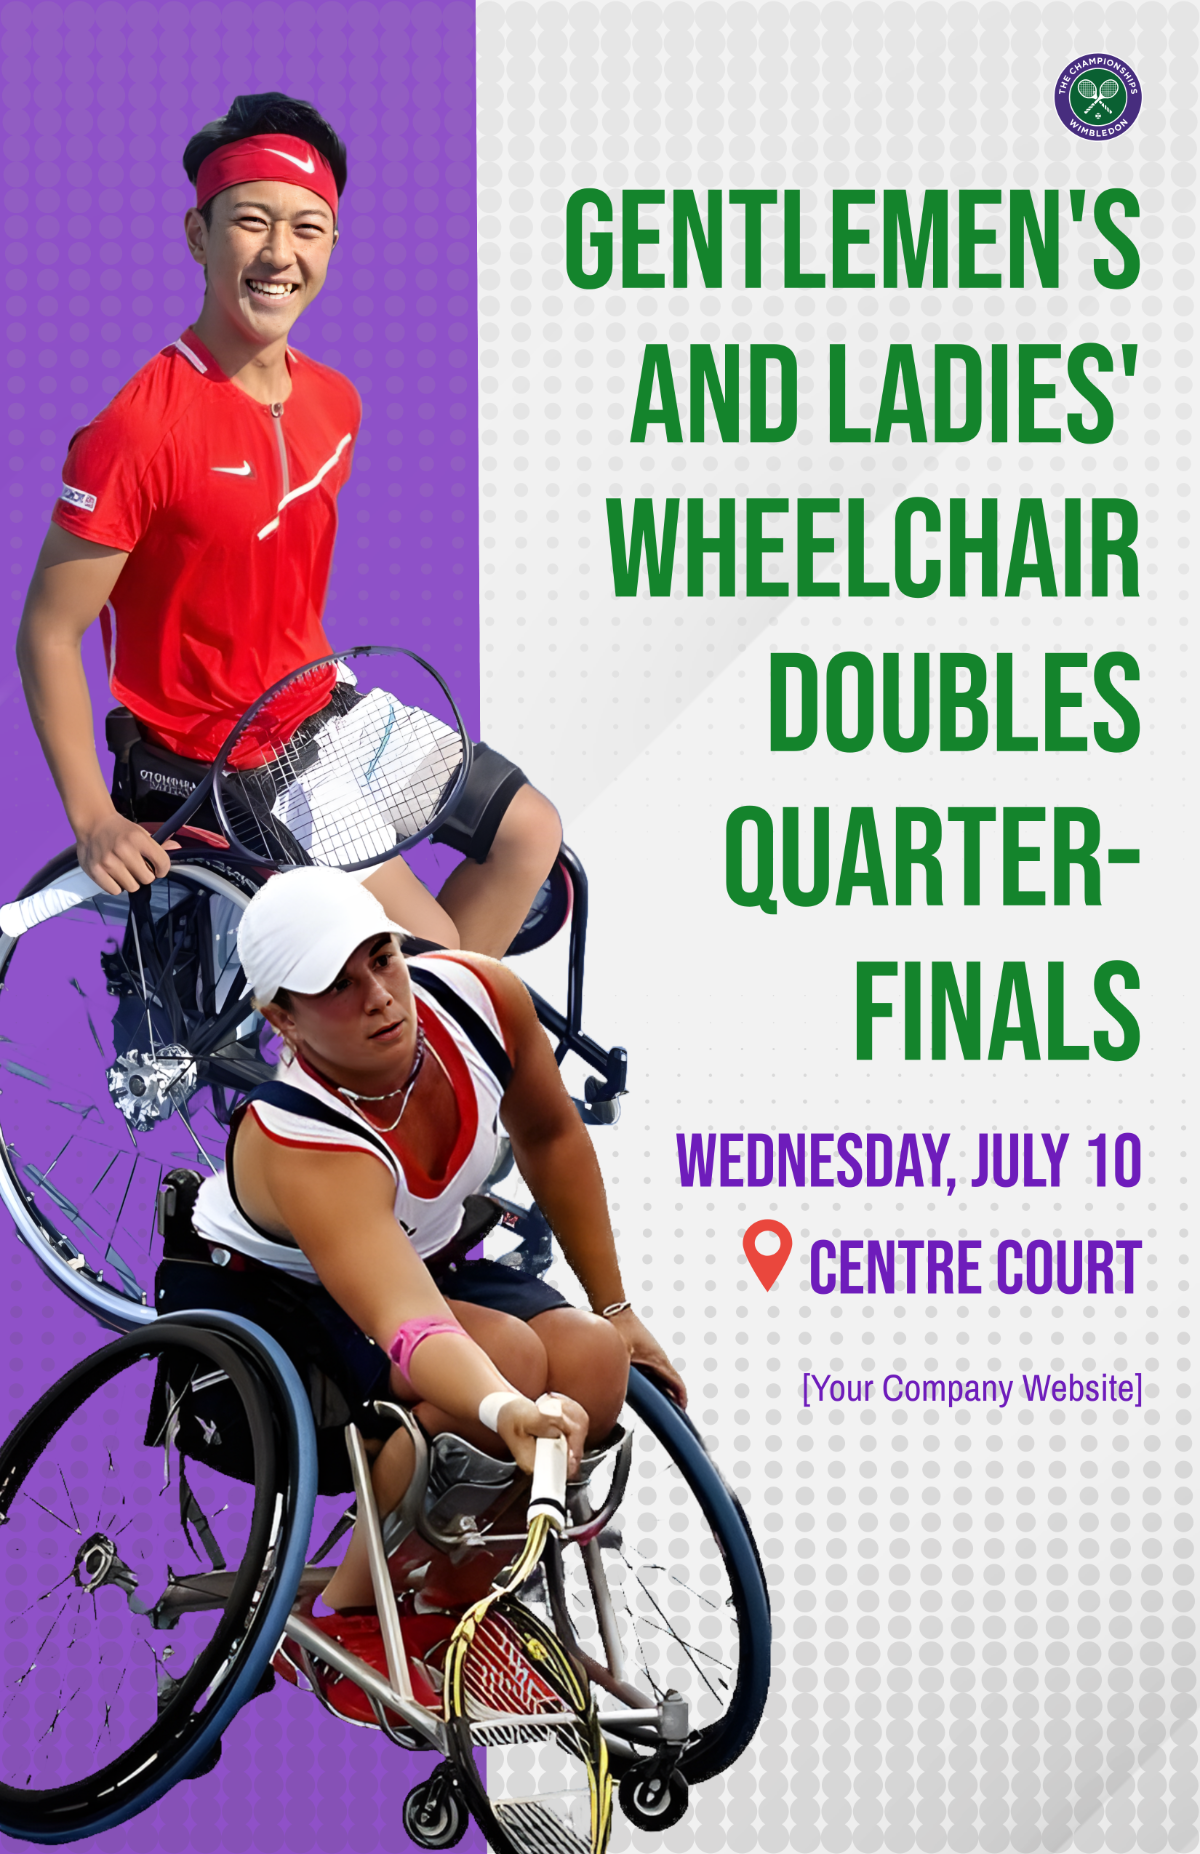 Wimbledon Gentlemen's and Ladies' Wheelchair Doubles Quarter-finals